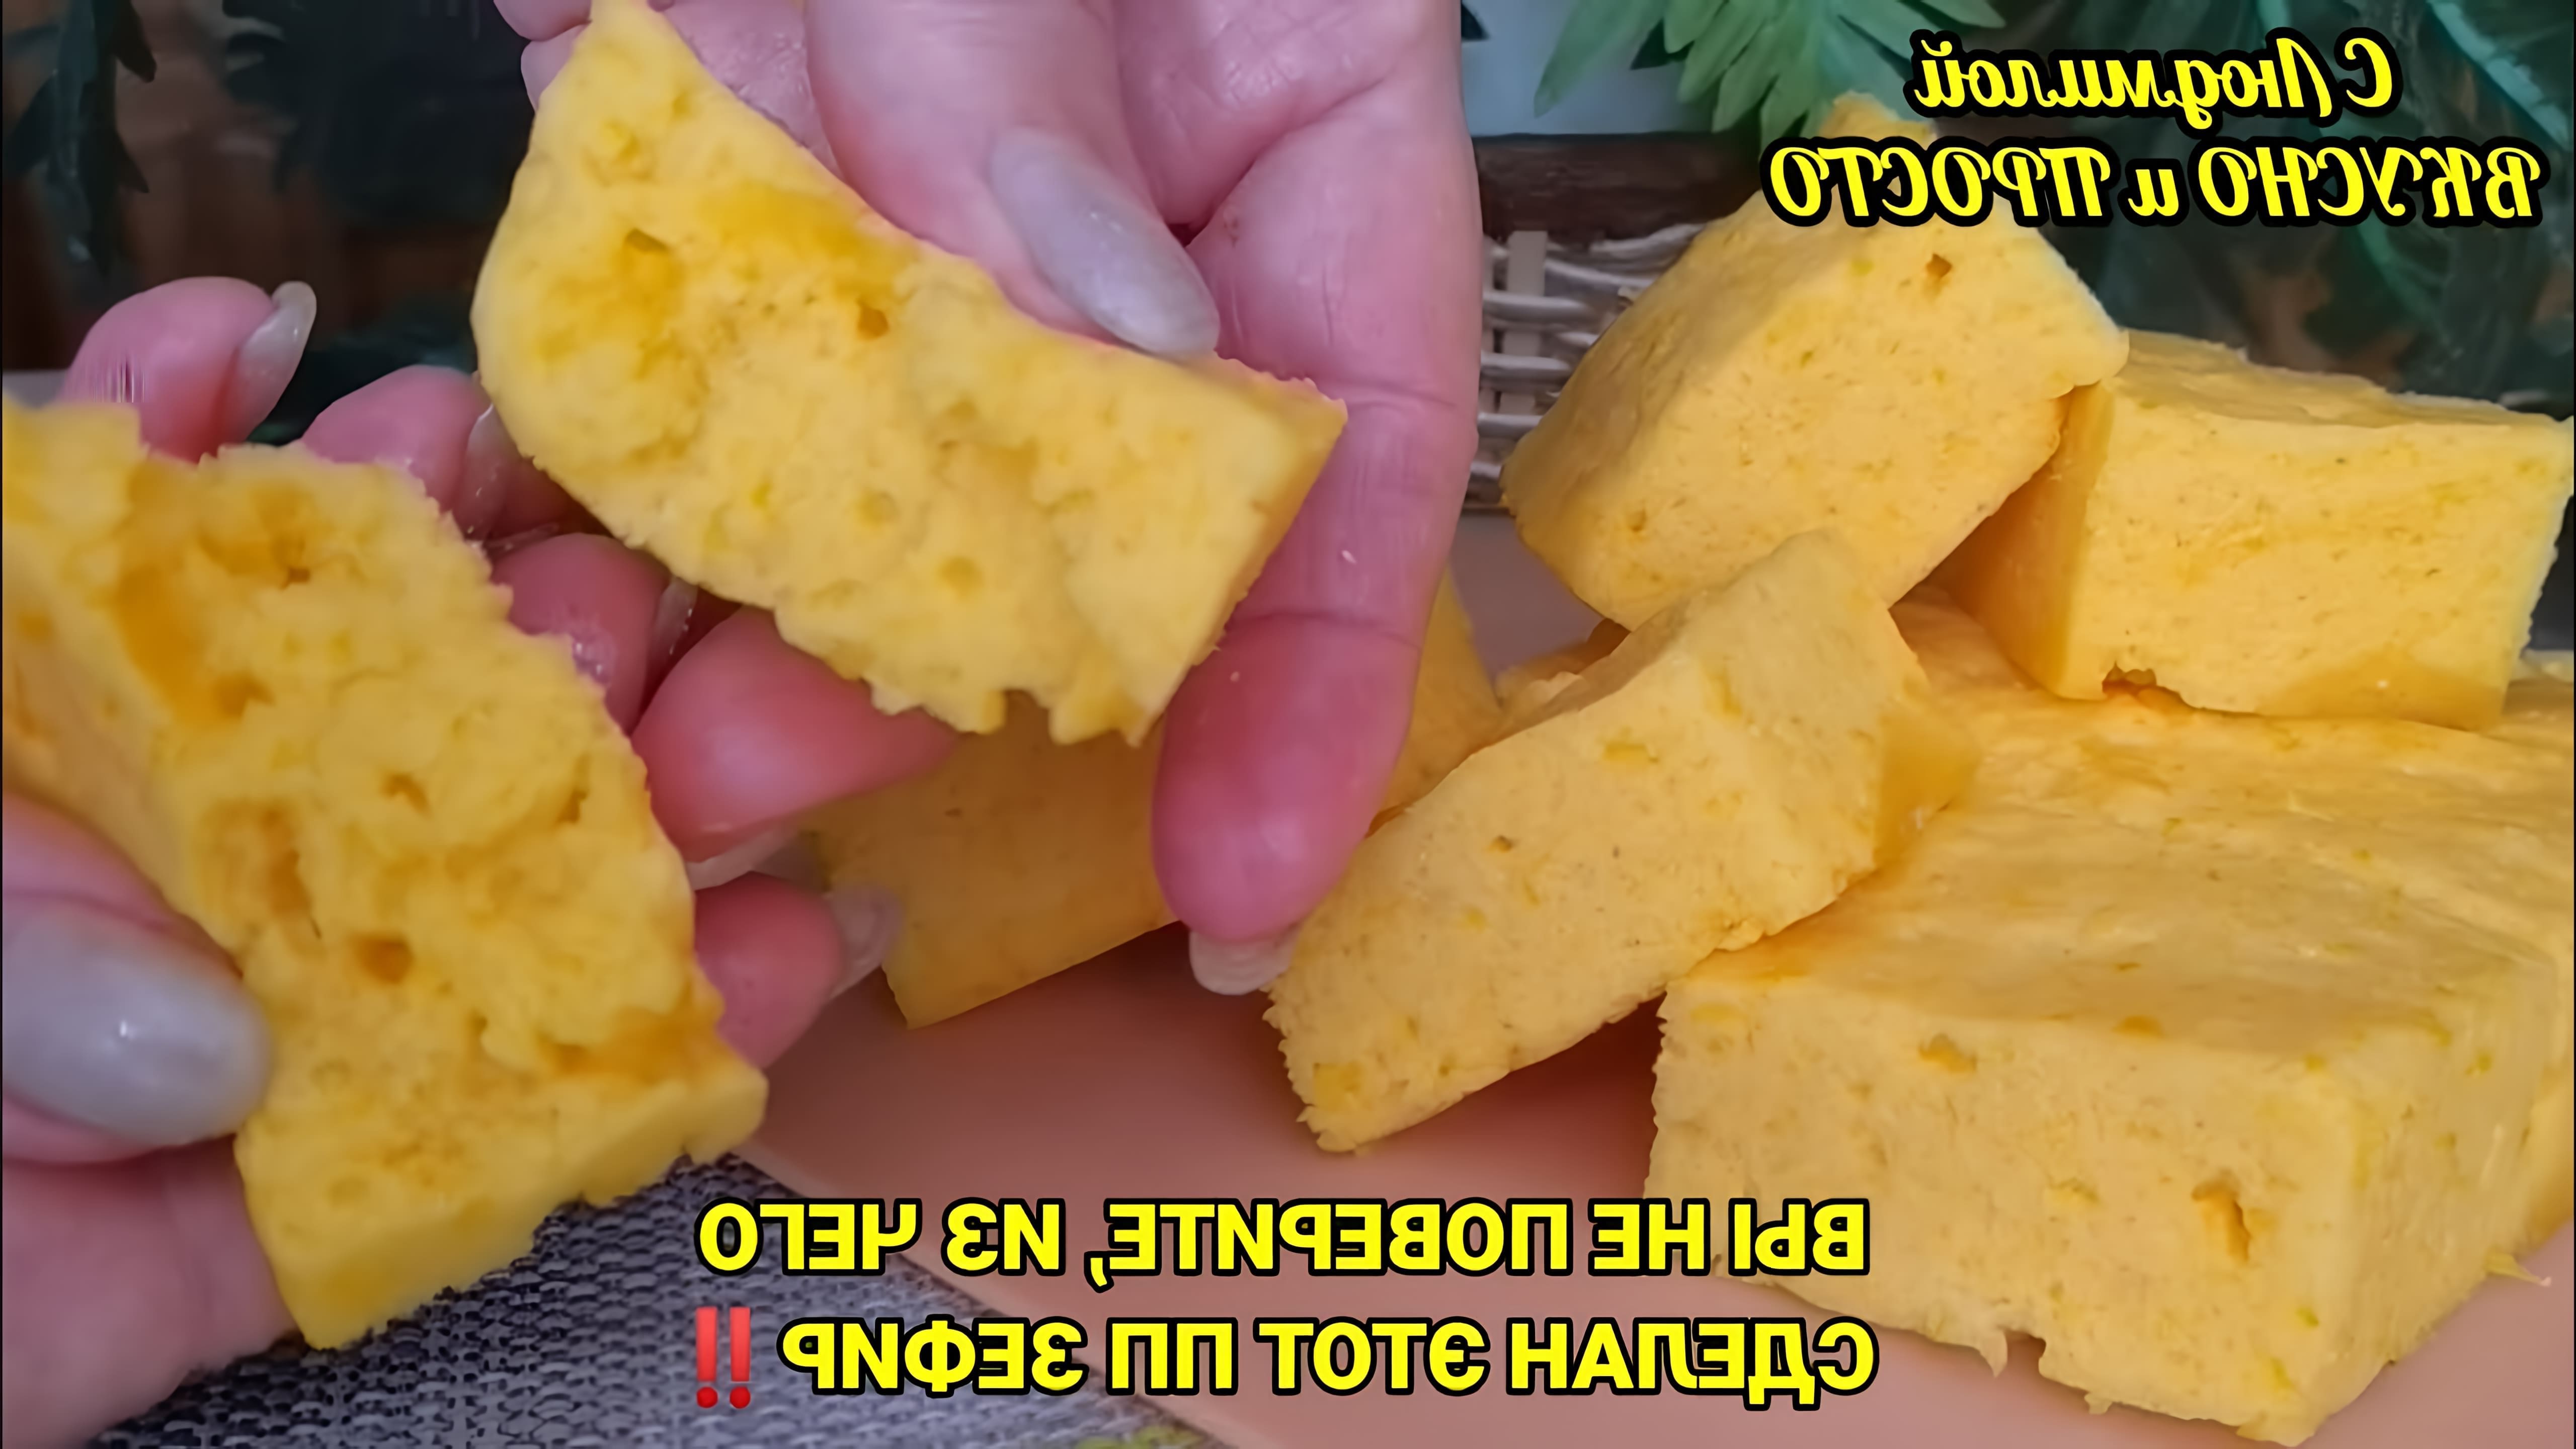 В этом видео демонстрируется рецепт приготовления полезного и вкусного десерта из тыквы и апельсина